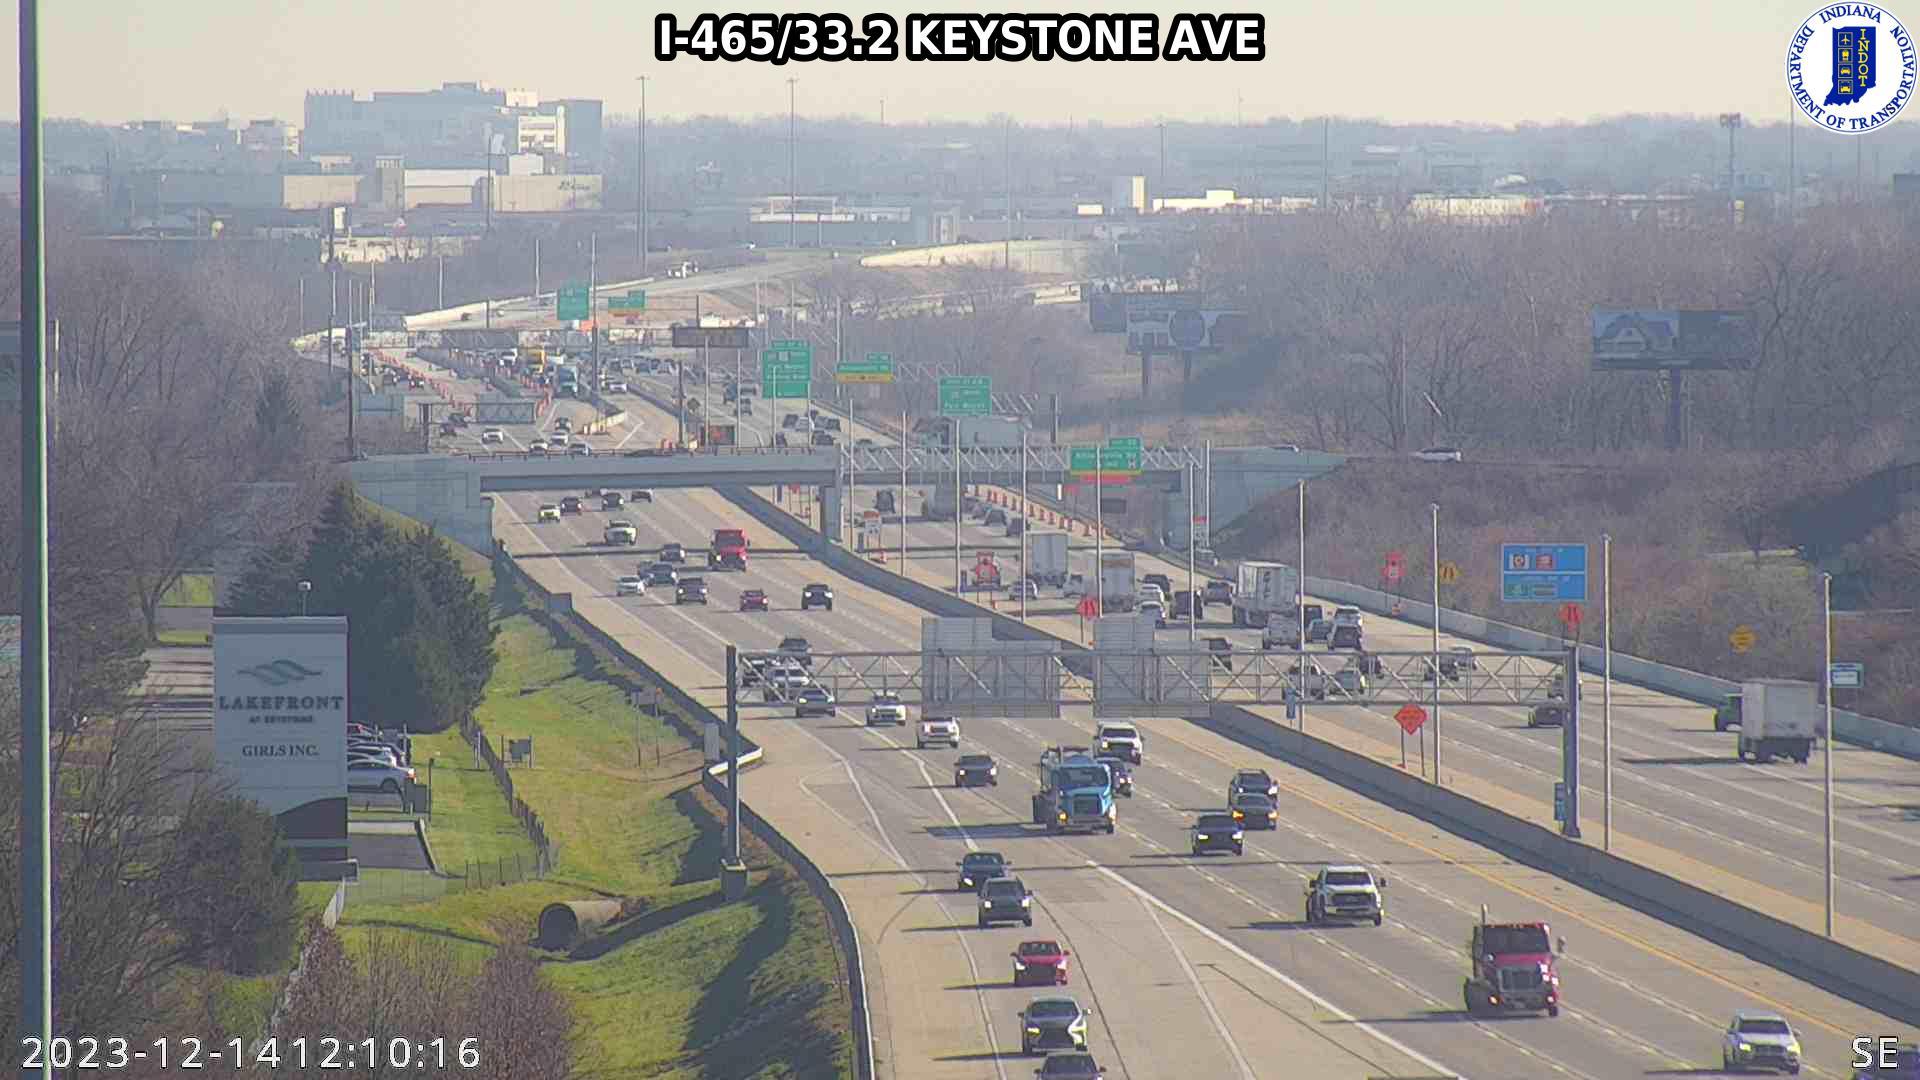 Traffic Cam Indianapolis: I-465: I-465/33.2 KEYSTONE AVE